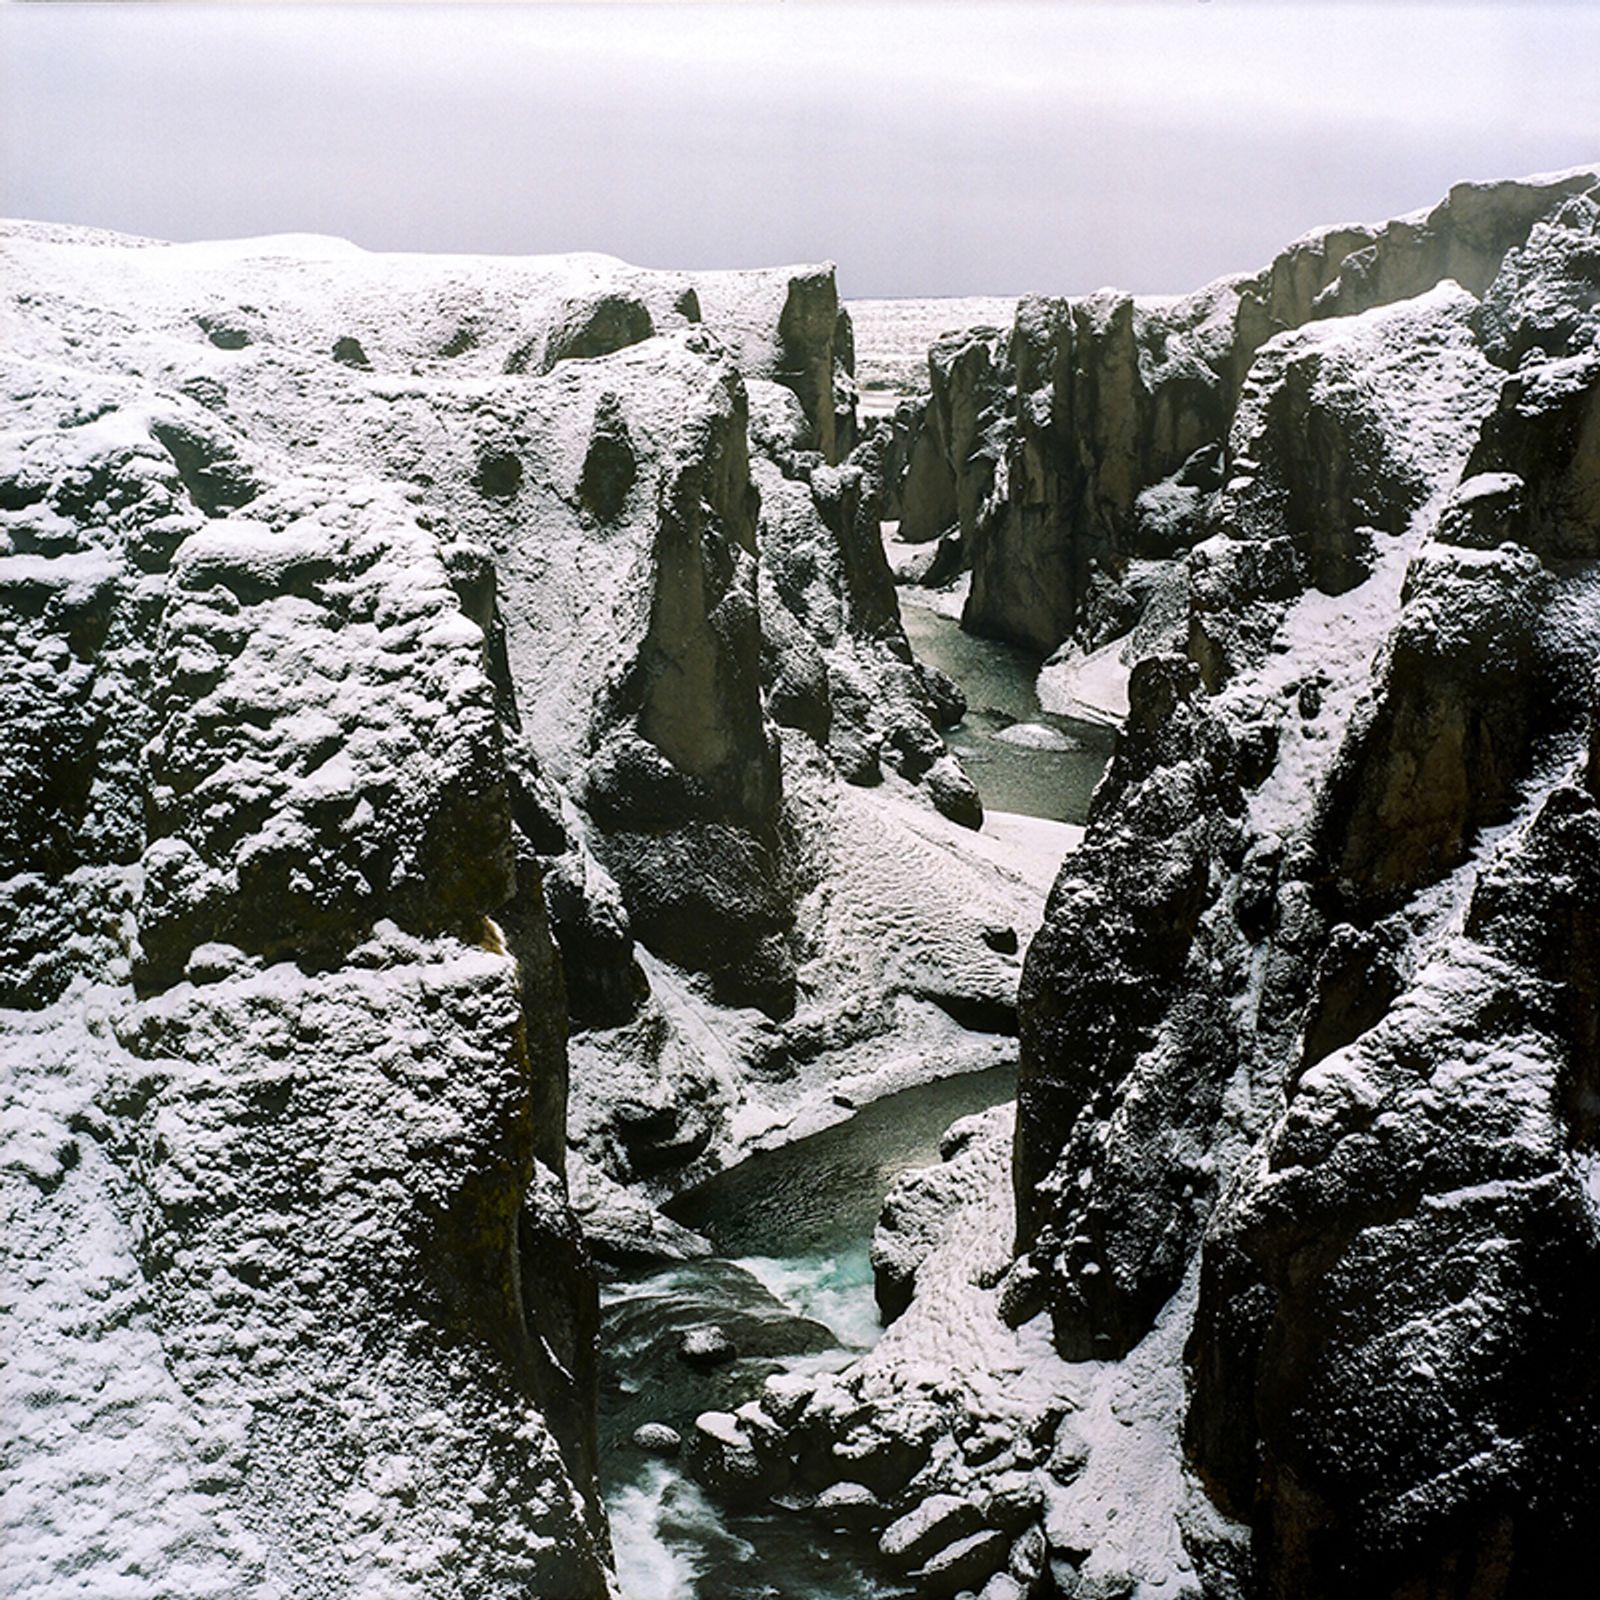 © Kathy Anne Lim - River; Fjaðrárgljúfur, Iceland, 2018.